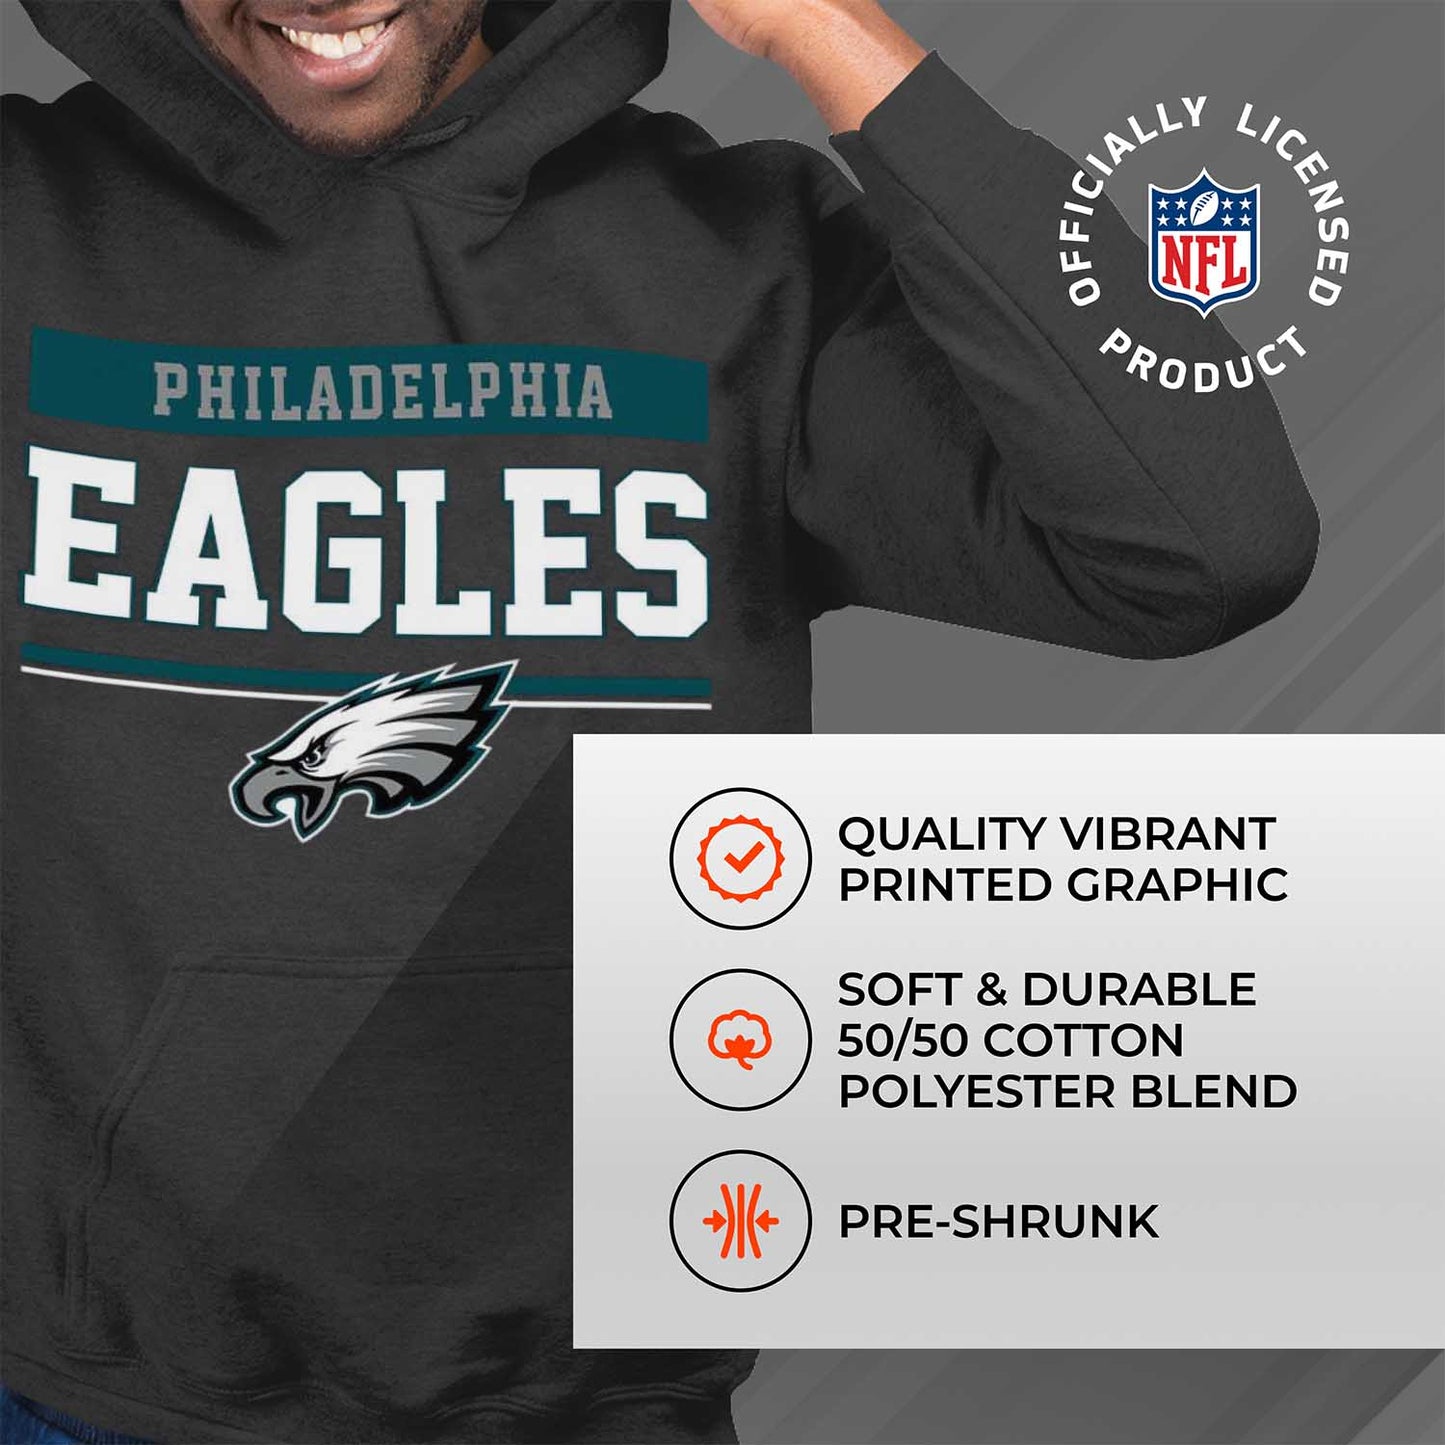 Philadelphia Eagles NFL Adult Gameday Charcoal Hooded Sweatshirt - Charcoal